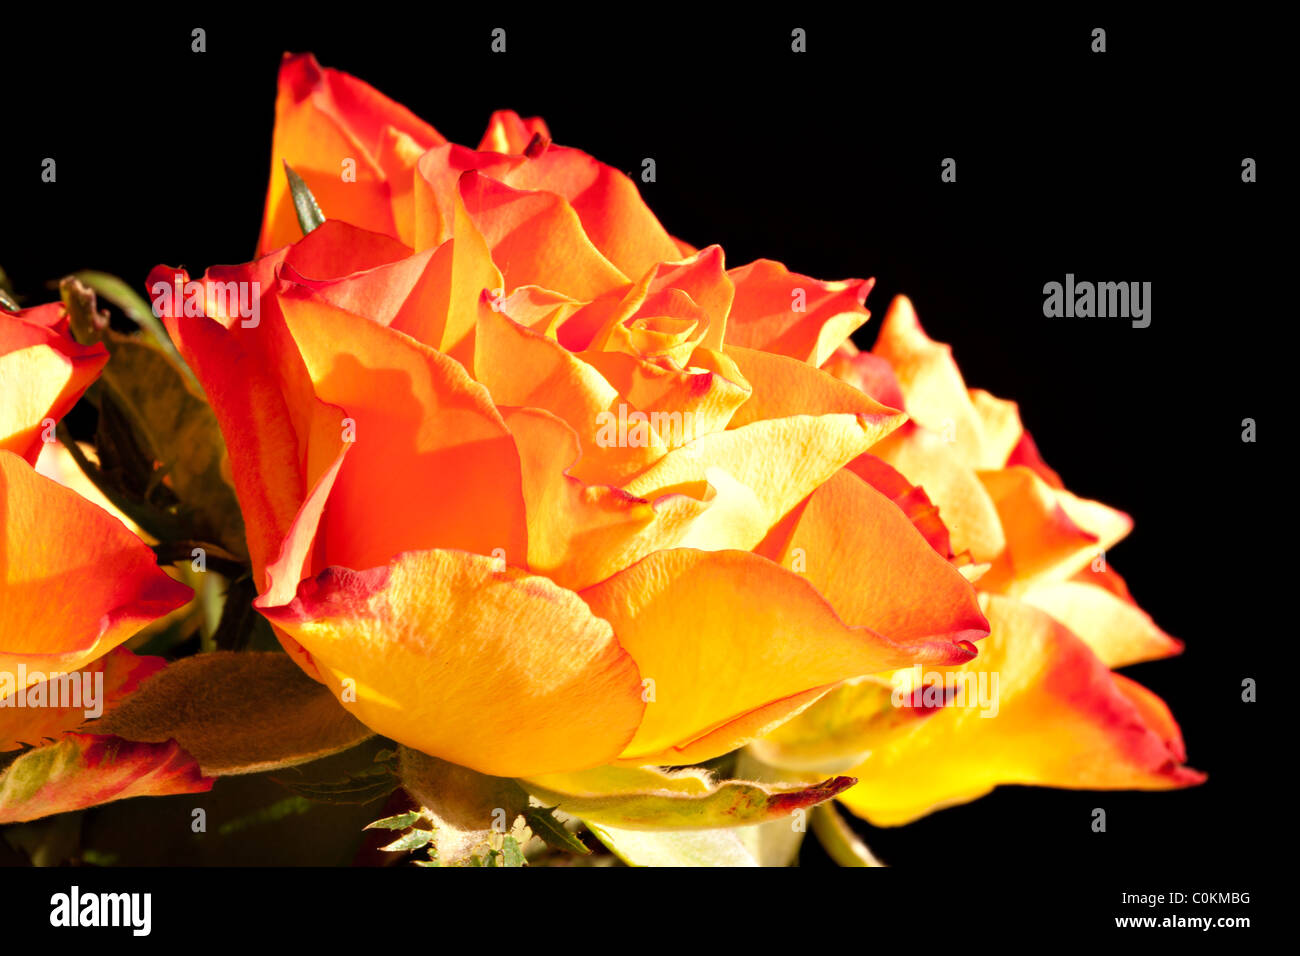 Orange roses on black background  Stock Photo